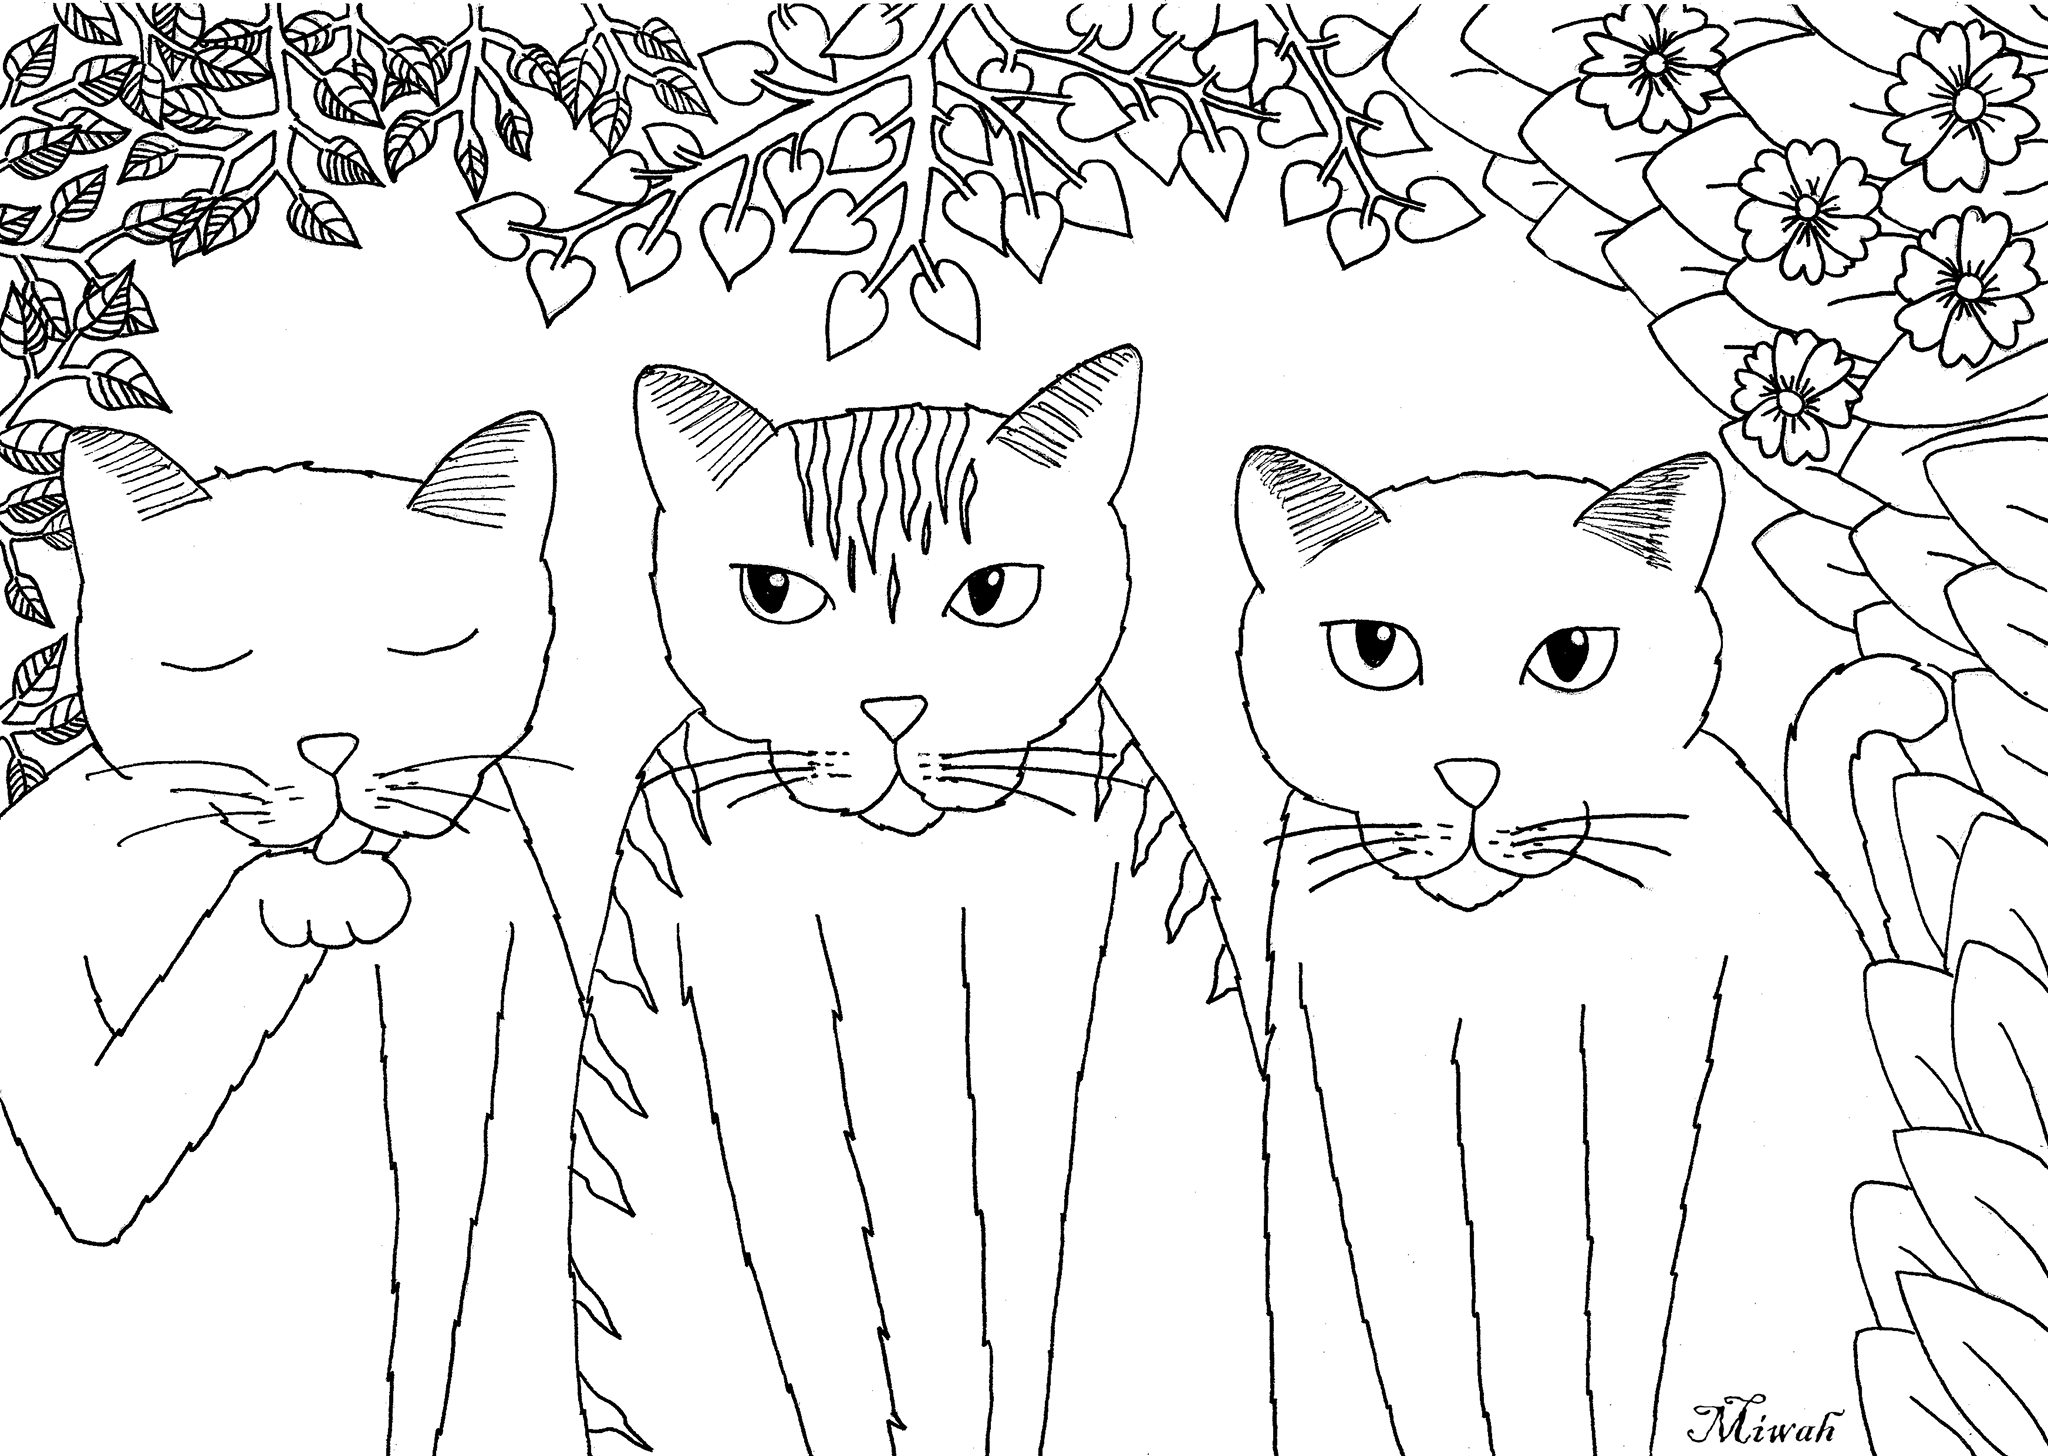 Desenhos grátis para colorir de Animais para imprimir e colorir, Artista : Miwah